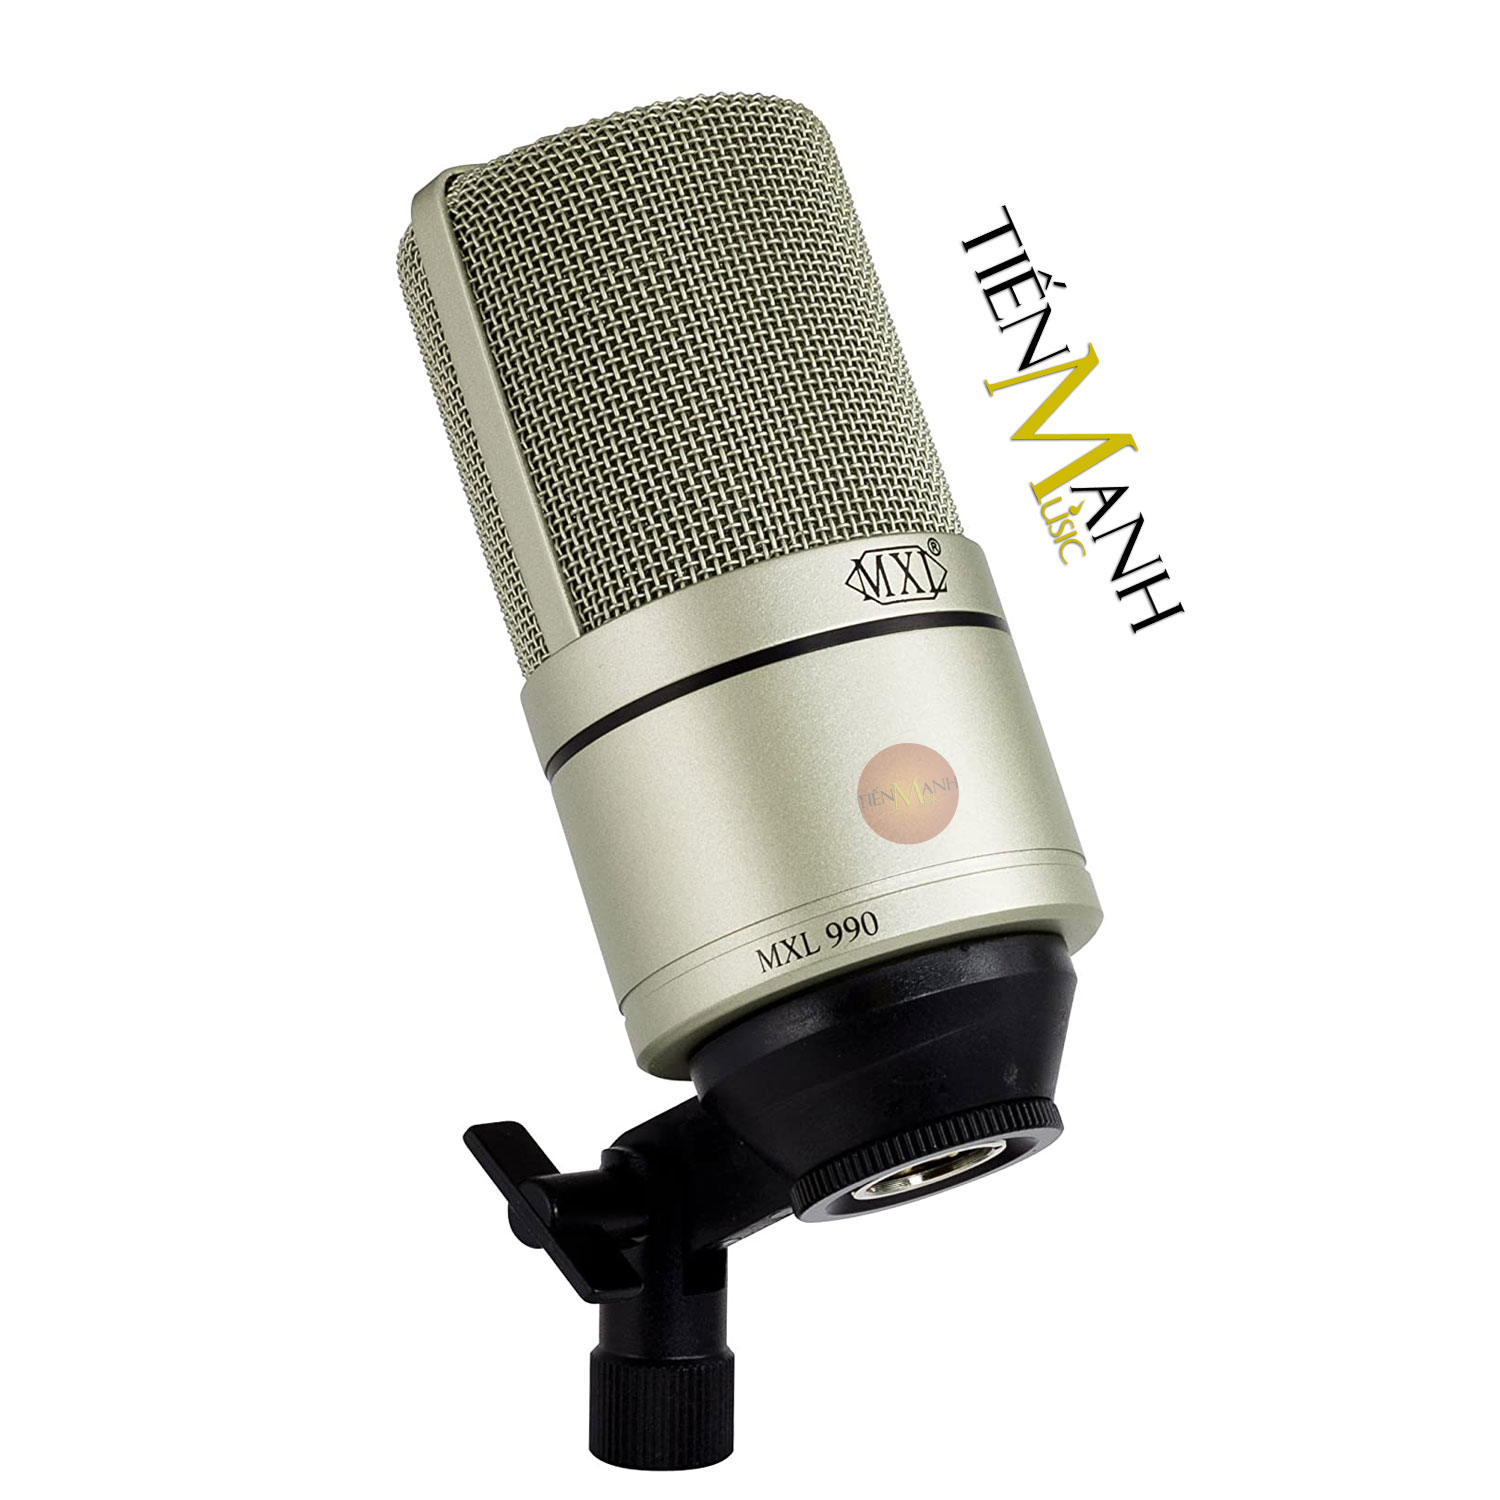 [Tặng Cable] Bộ Micro MXL 990-991 Thu Âm Giọng Hát và Nhạc cụ Mic Phòng Thu Studio MXL990 MXL991 Microphone Cardioid Hàng Chính Hãng - Kèm Móng Gẩy DreamMaker